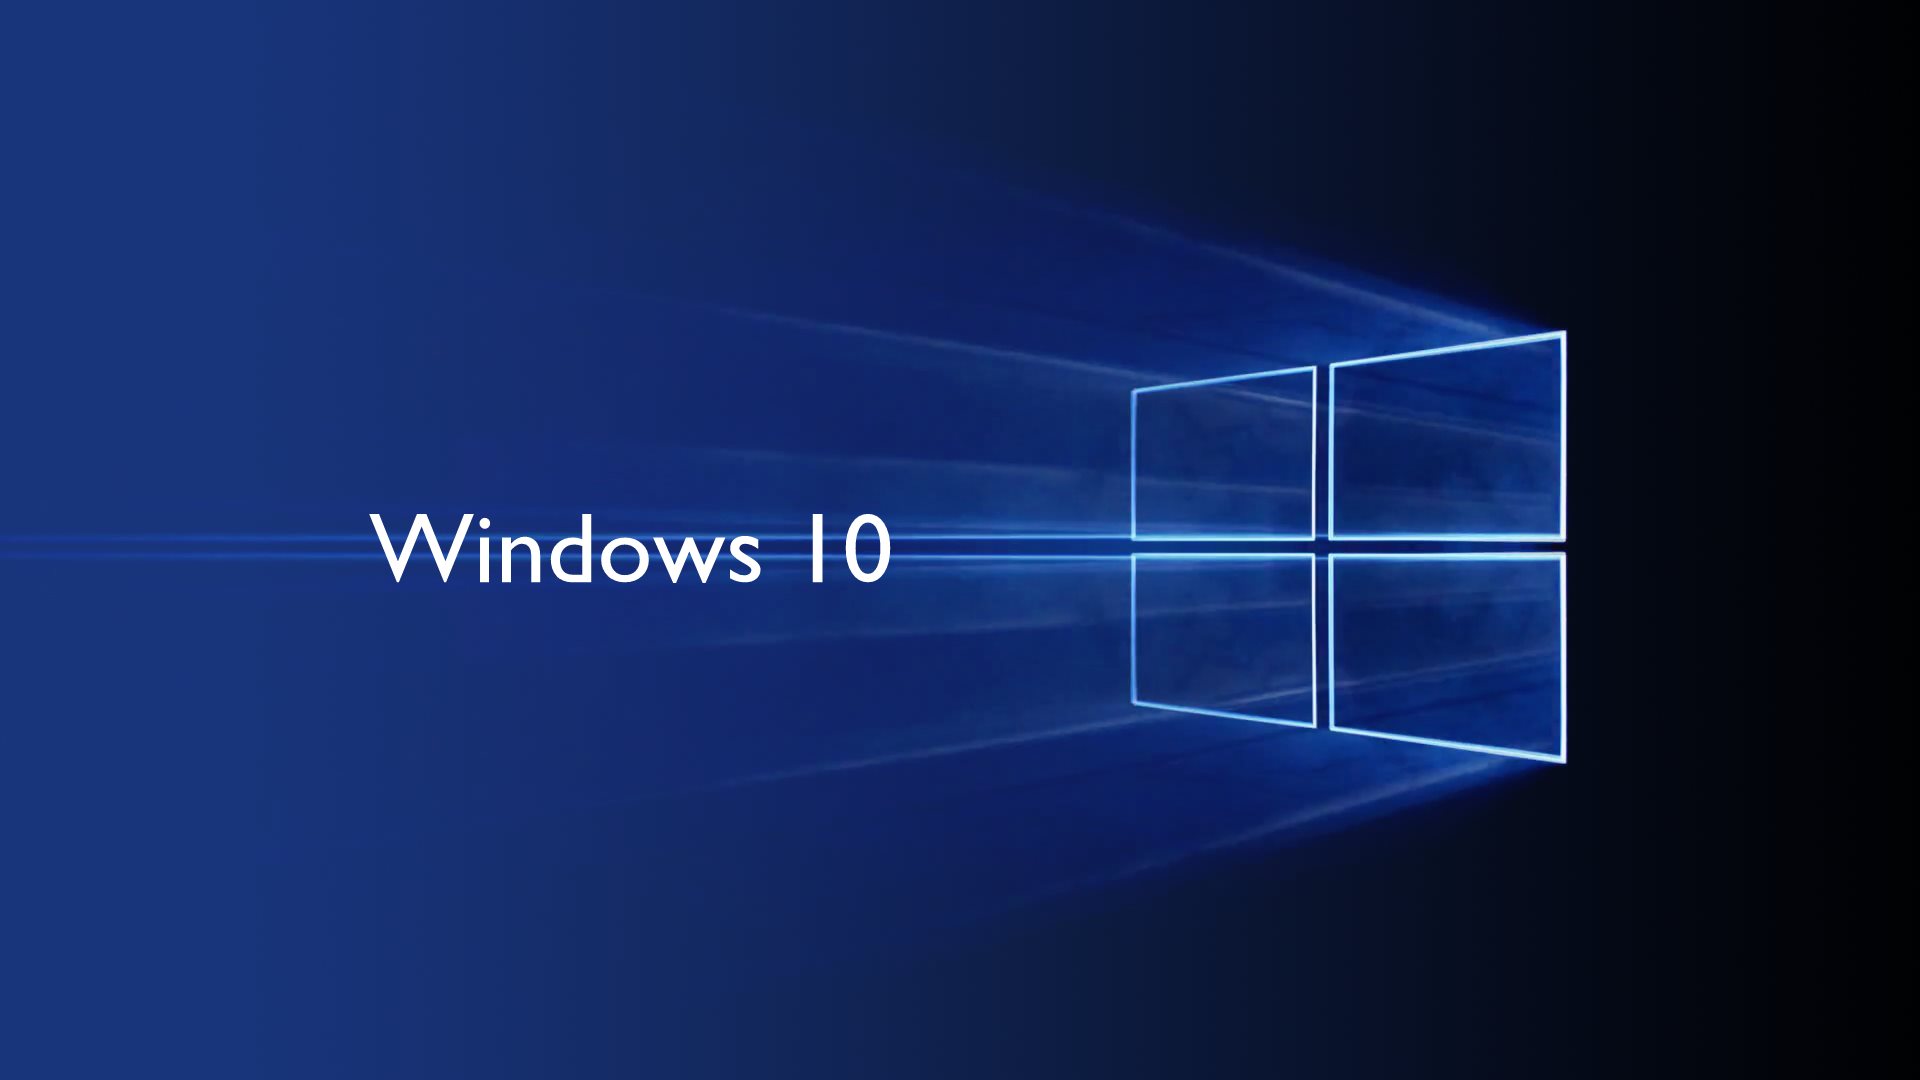 对于微软来说,Windows 10 还重要吗?